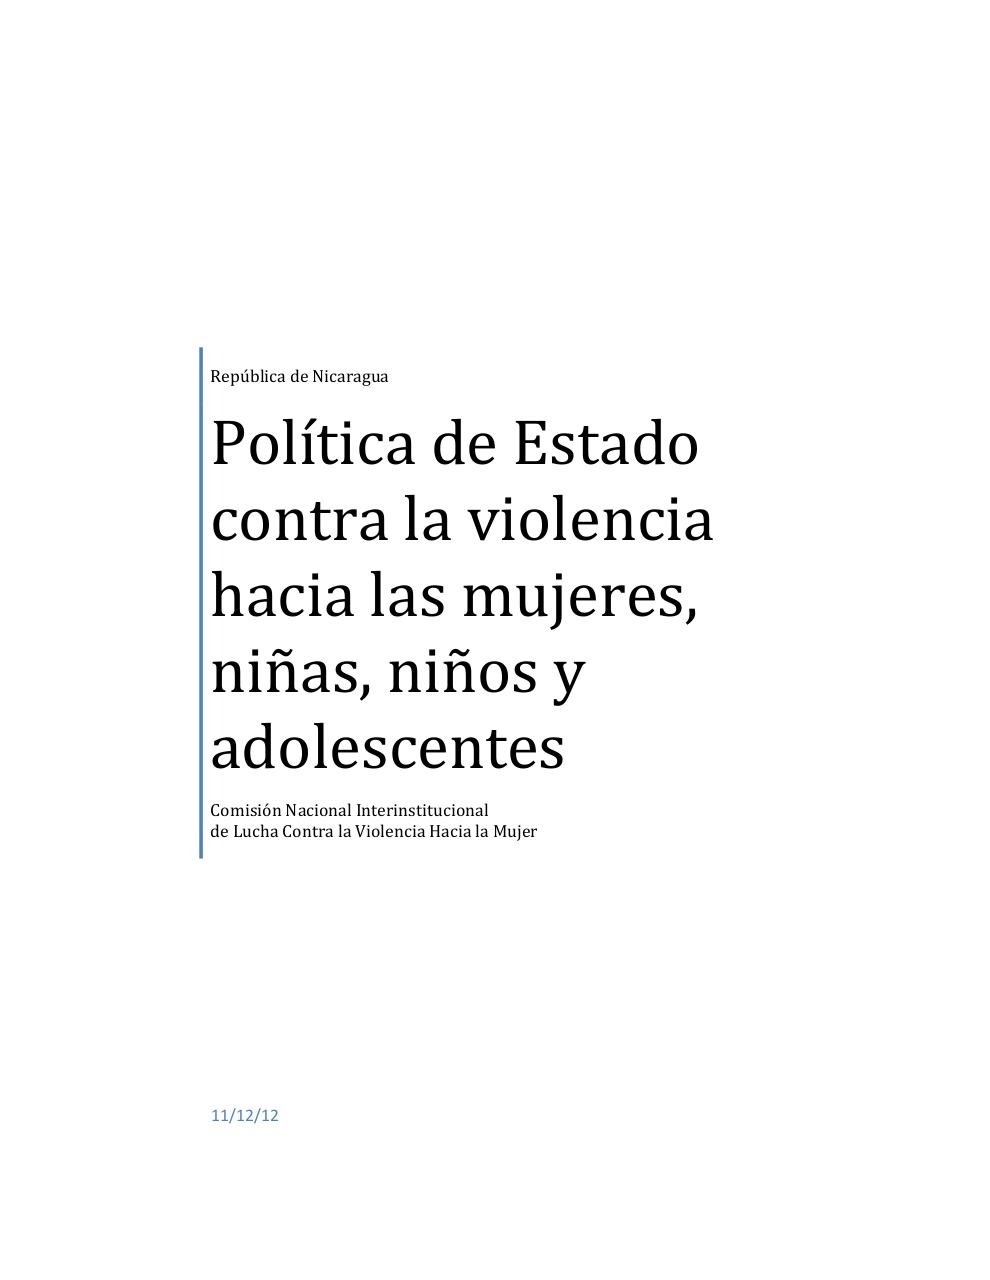 Politica de estado contra la violencia.pdf - page 1/56